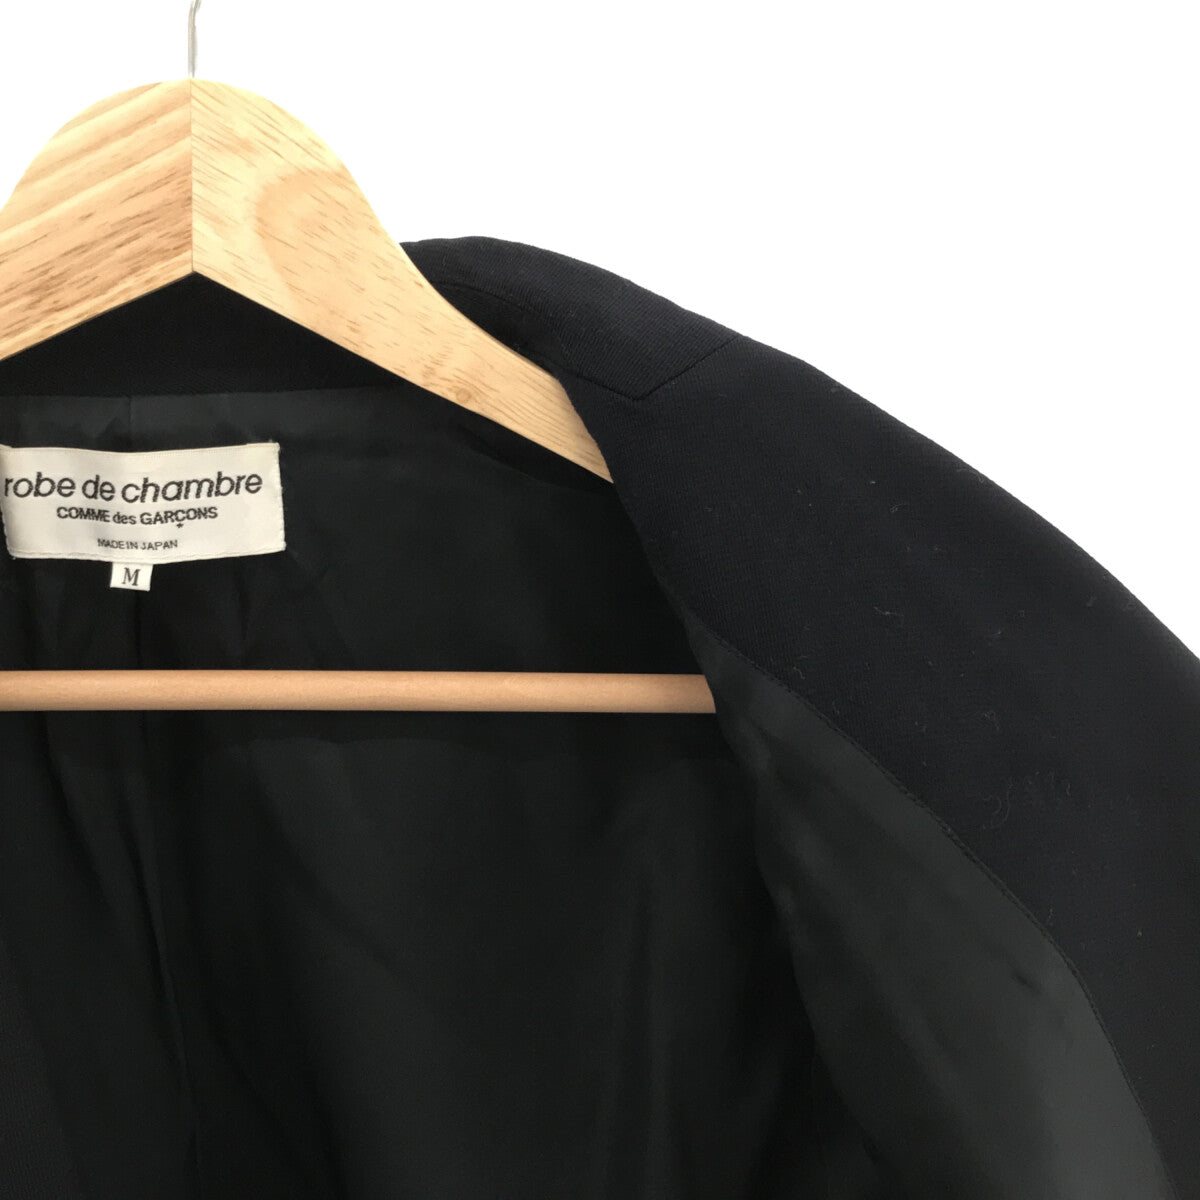 robe de chambre COMME des GARCONS / ローブドシャンブルコムデギャルソン | 2003AW | スター転写 テーラードジャケット | M | ネイビー | レディース